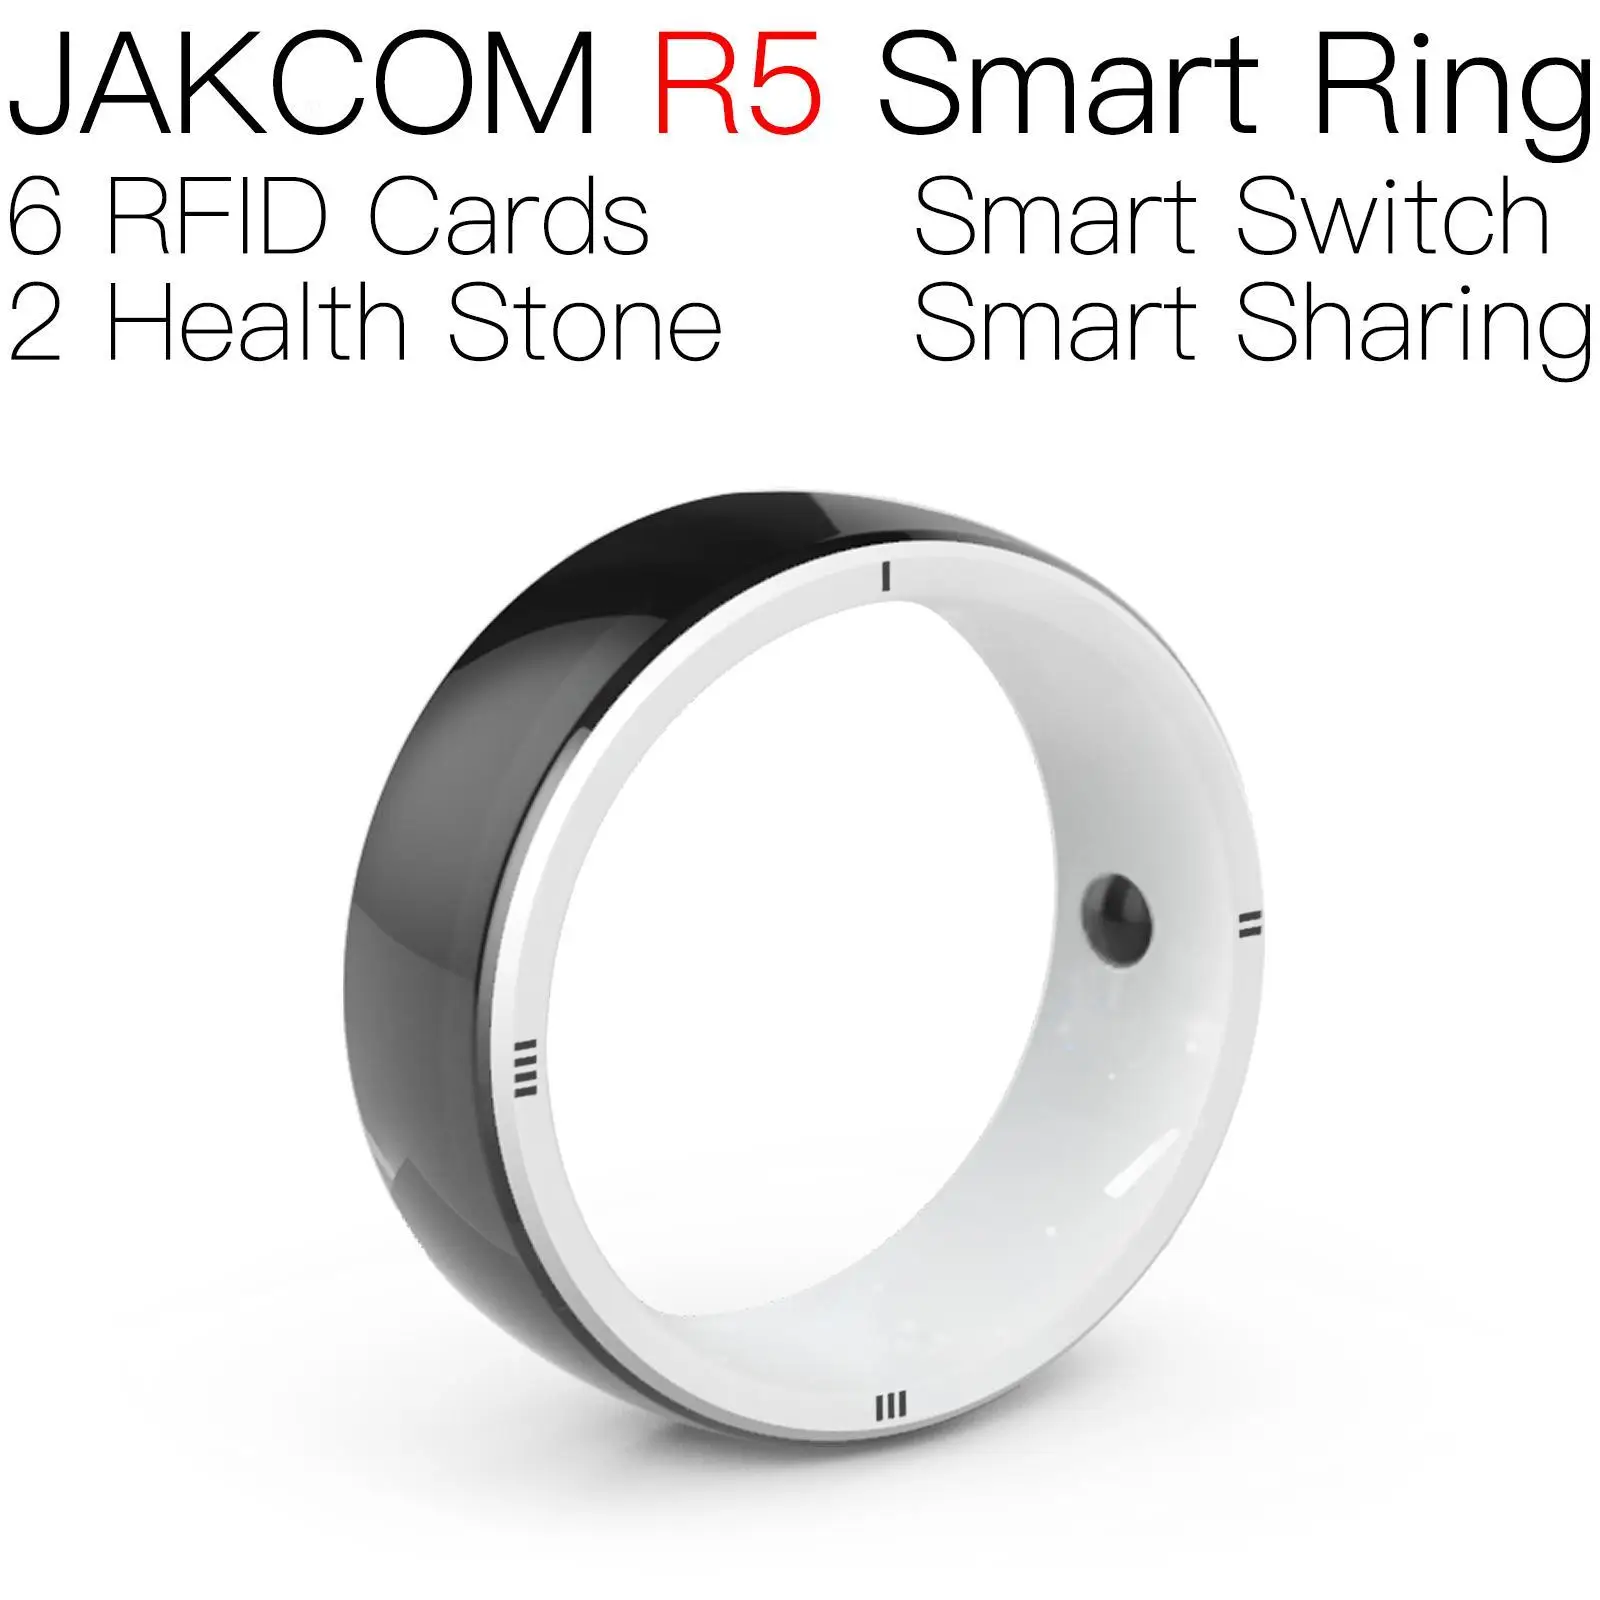 Smart-prsten JAKCOM R5 ima veću vrijednost, nego držač za kartice mesa de luz 12 lite, remen za sat distake deauther 7 gateway zigbee